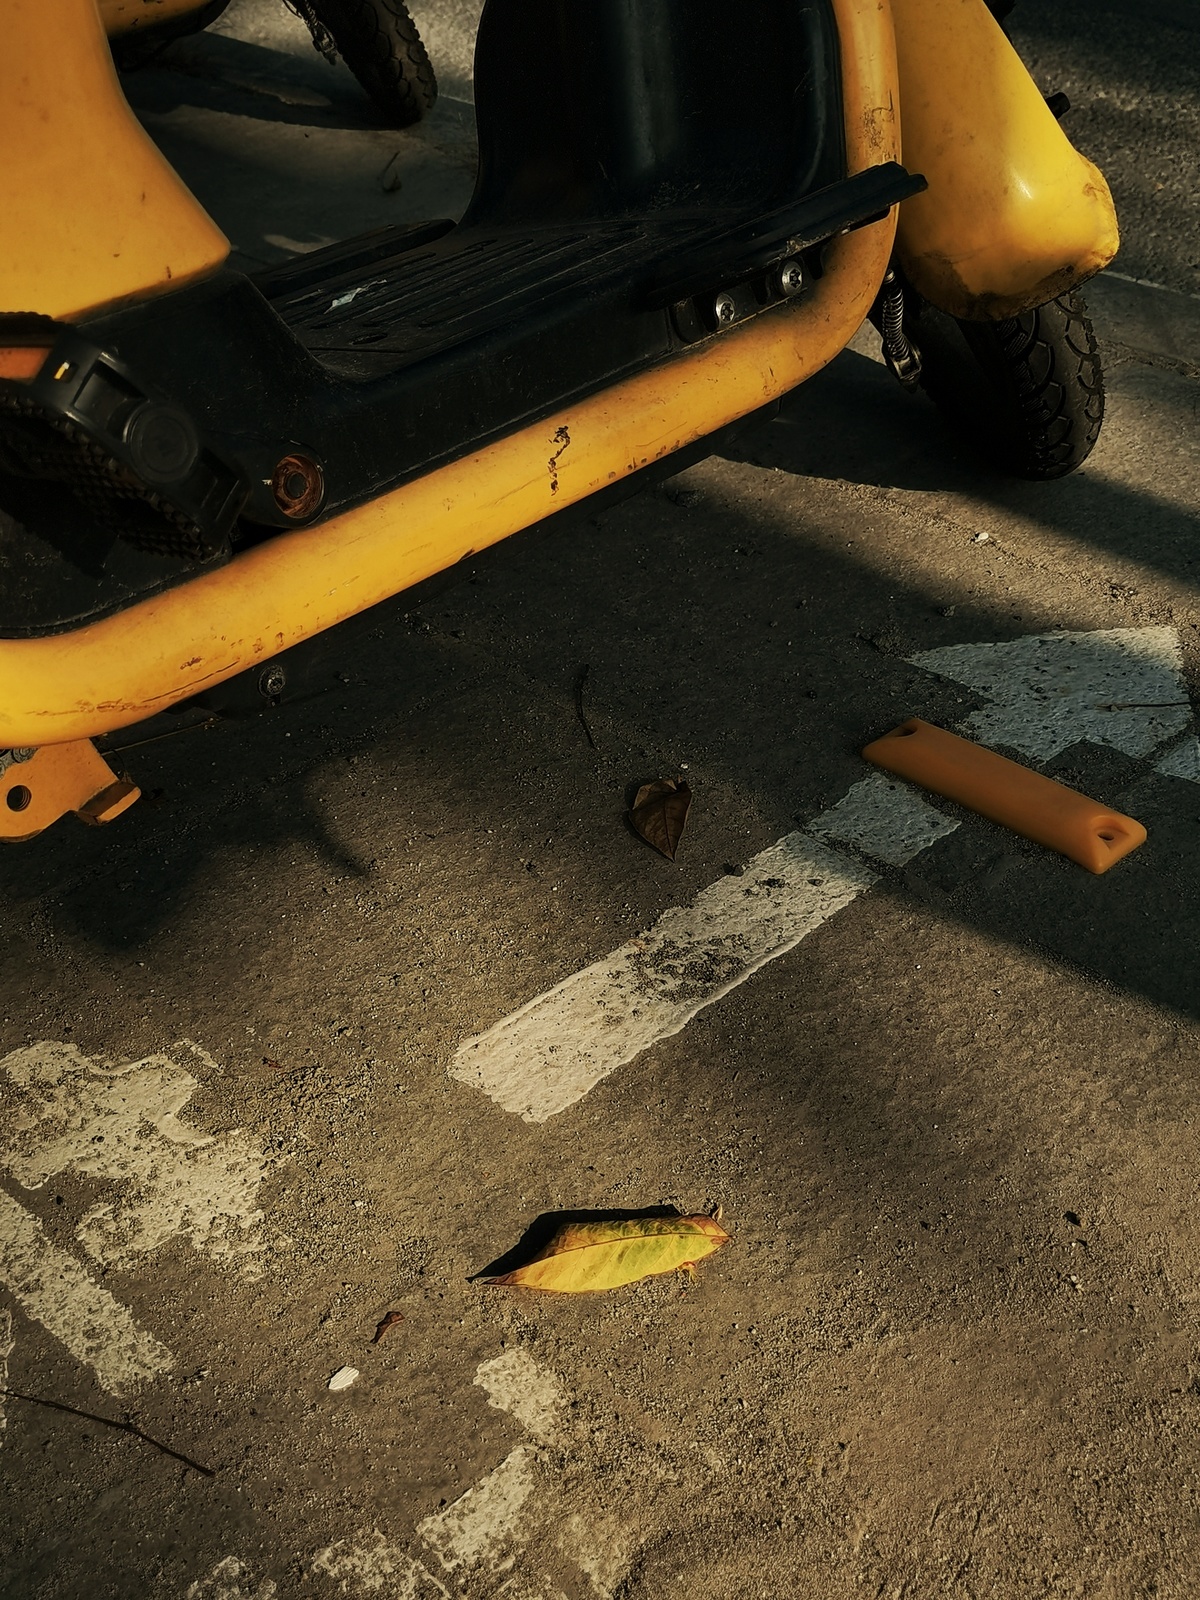 一辆黄色轻便摩托车停在街上 路边放着一根香蕉